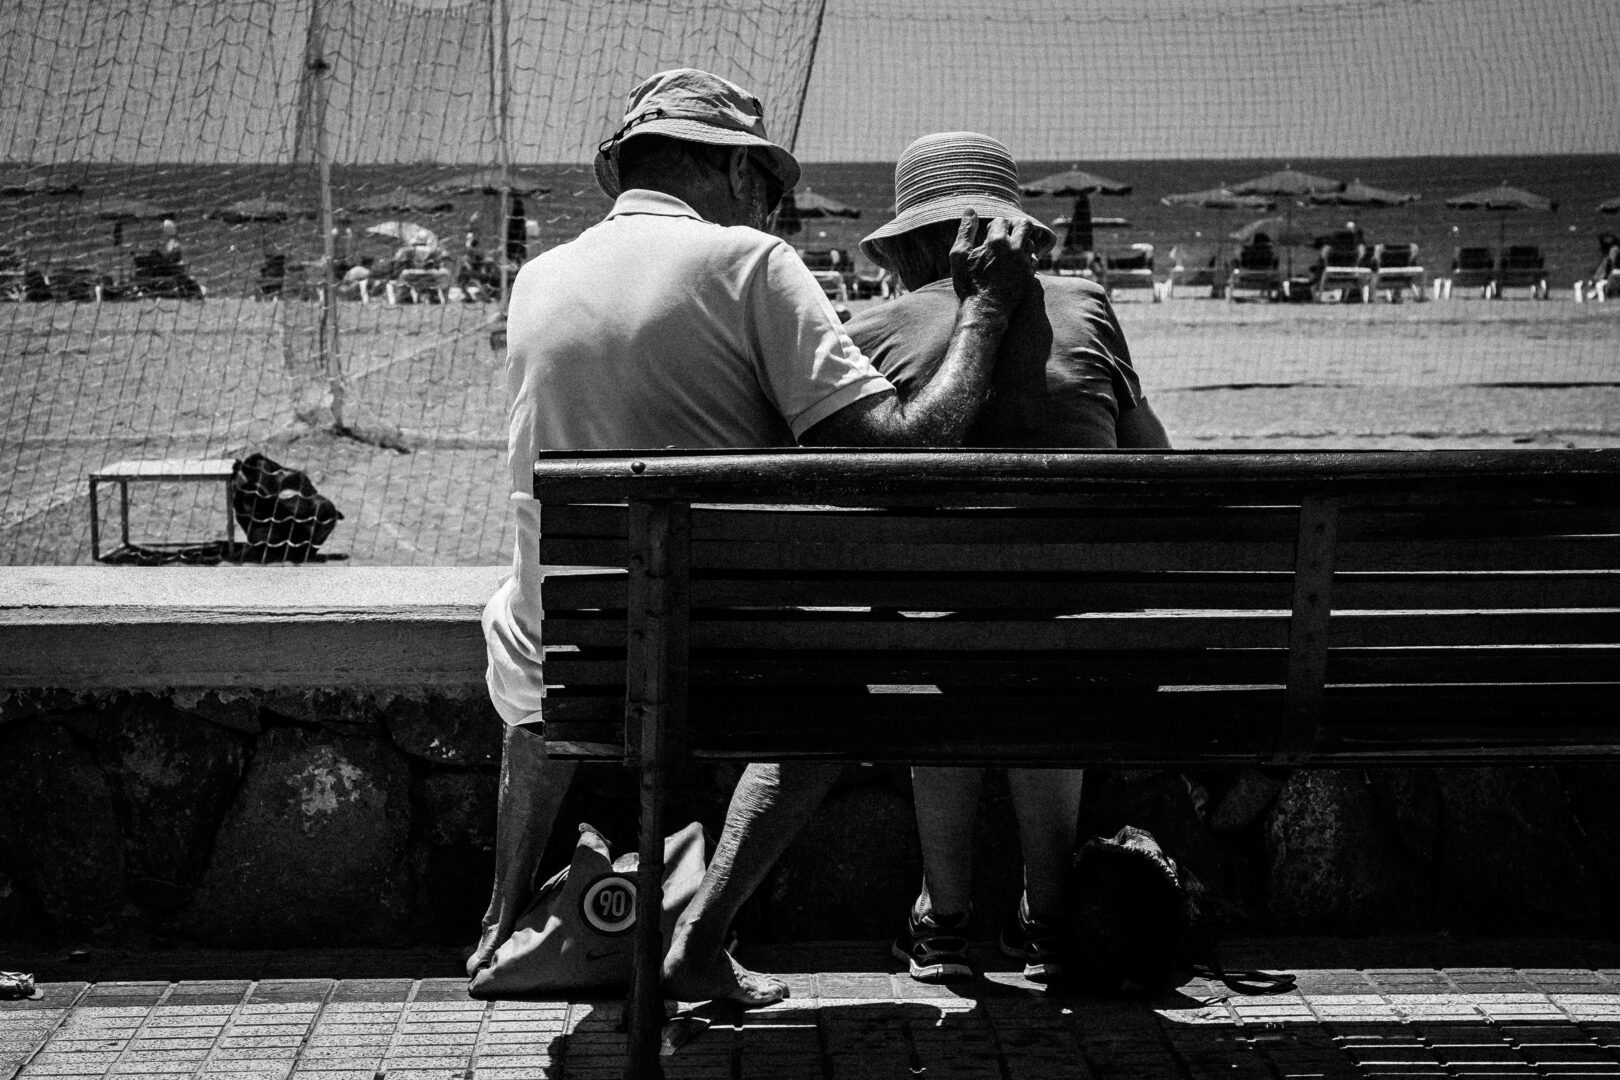 Na pierwszym planie lewa połowa ławki, ukazana od tyłu. Na lewym skraju siedzi starszy mężczyzna i trzyma przedramię na plecach kobiety siedzącej po prawej. Oboje mają letnie kapelusze, ubrani w bluzki z krótkim rękawem. W tle plaża, słomkowe parasole, leżaki i morze. Zdjęcie wykonane w technice czarno-białego zdjęcia.